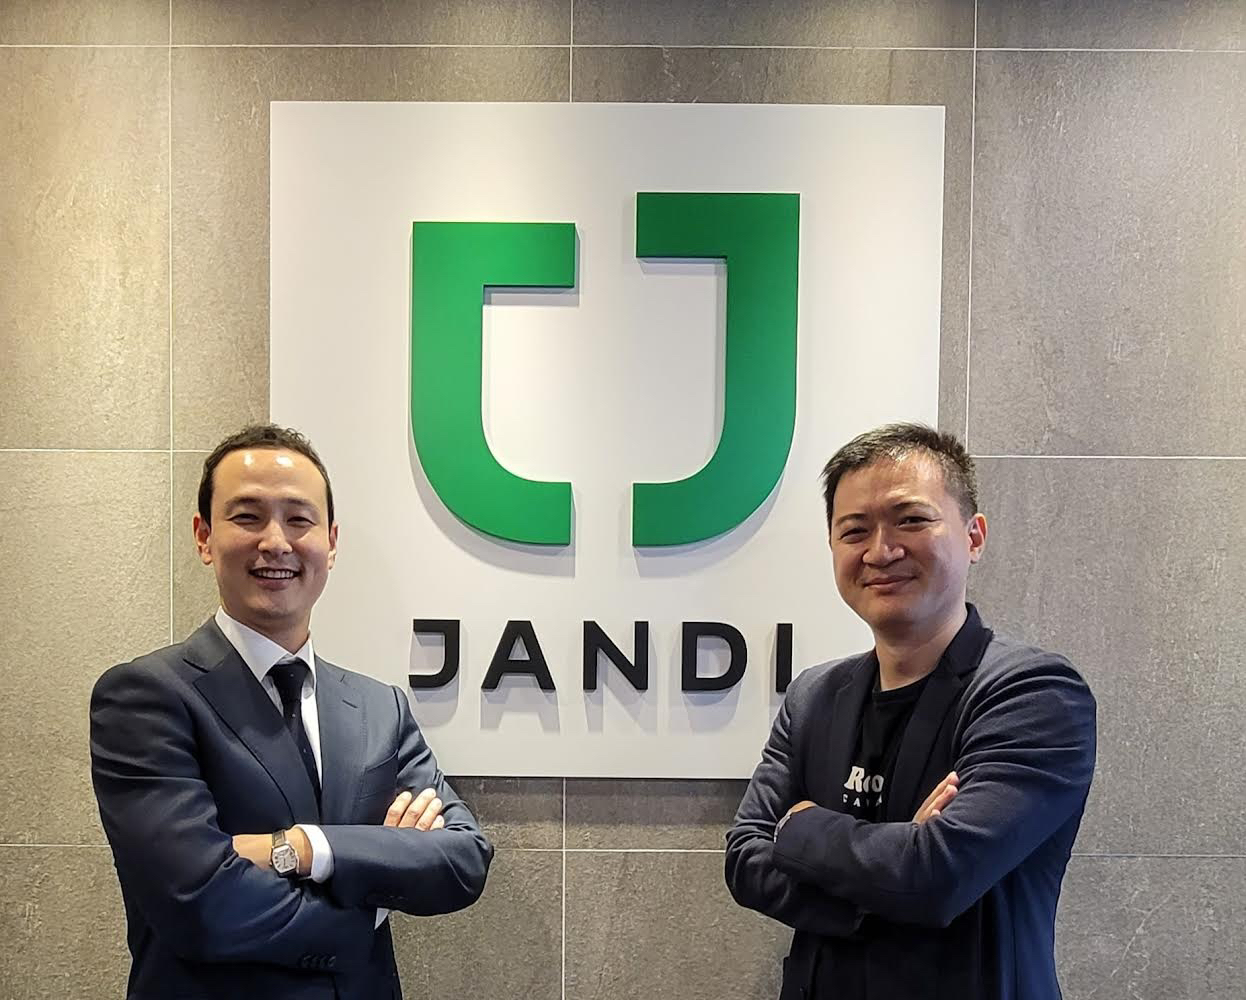 凱鈿入股韓國JANDI 打造亞洲雲端辦公軟體生態圈